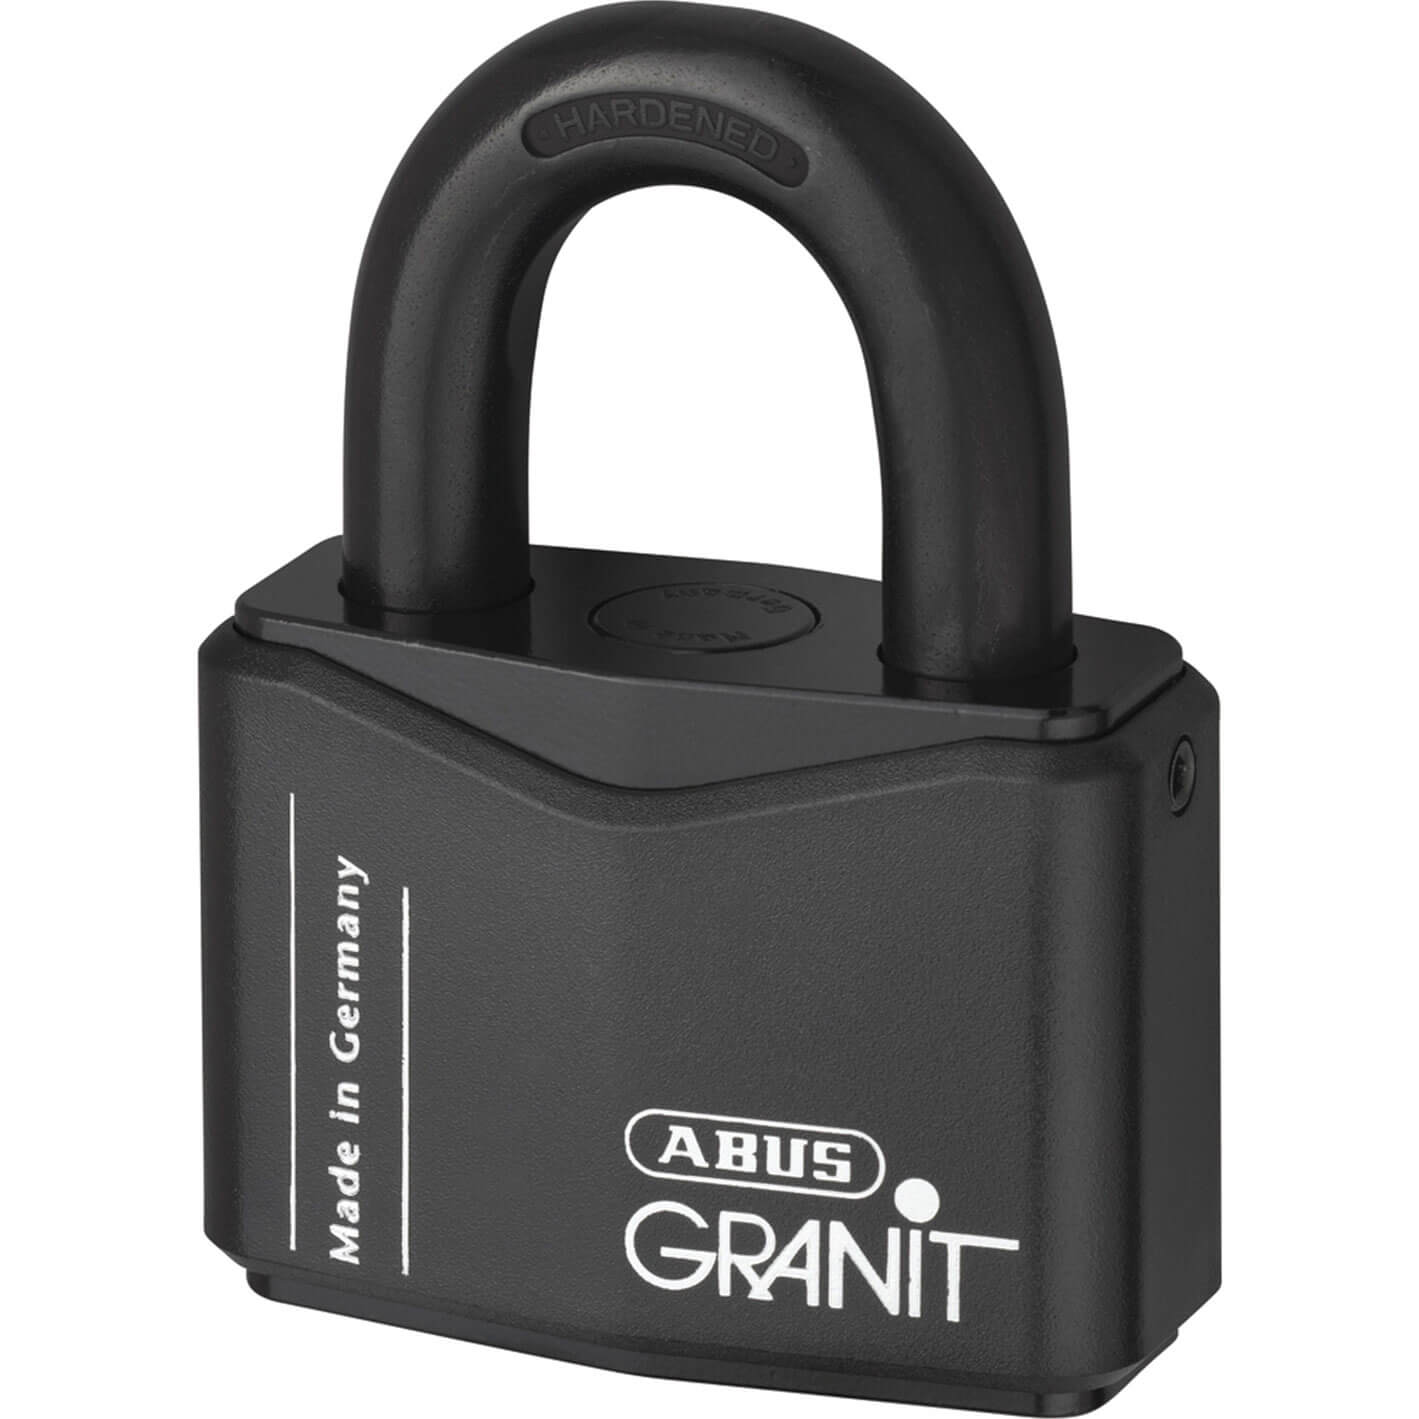 Image of Abus Granit Plus Padlock 70mm Standard